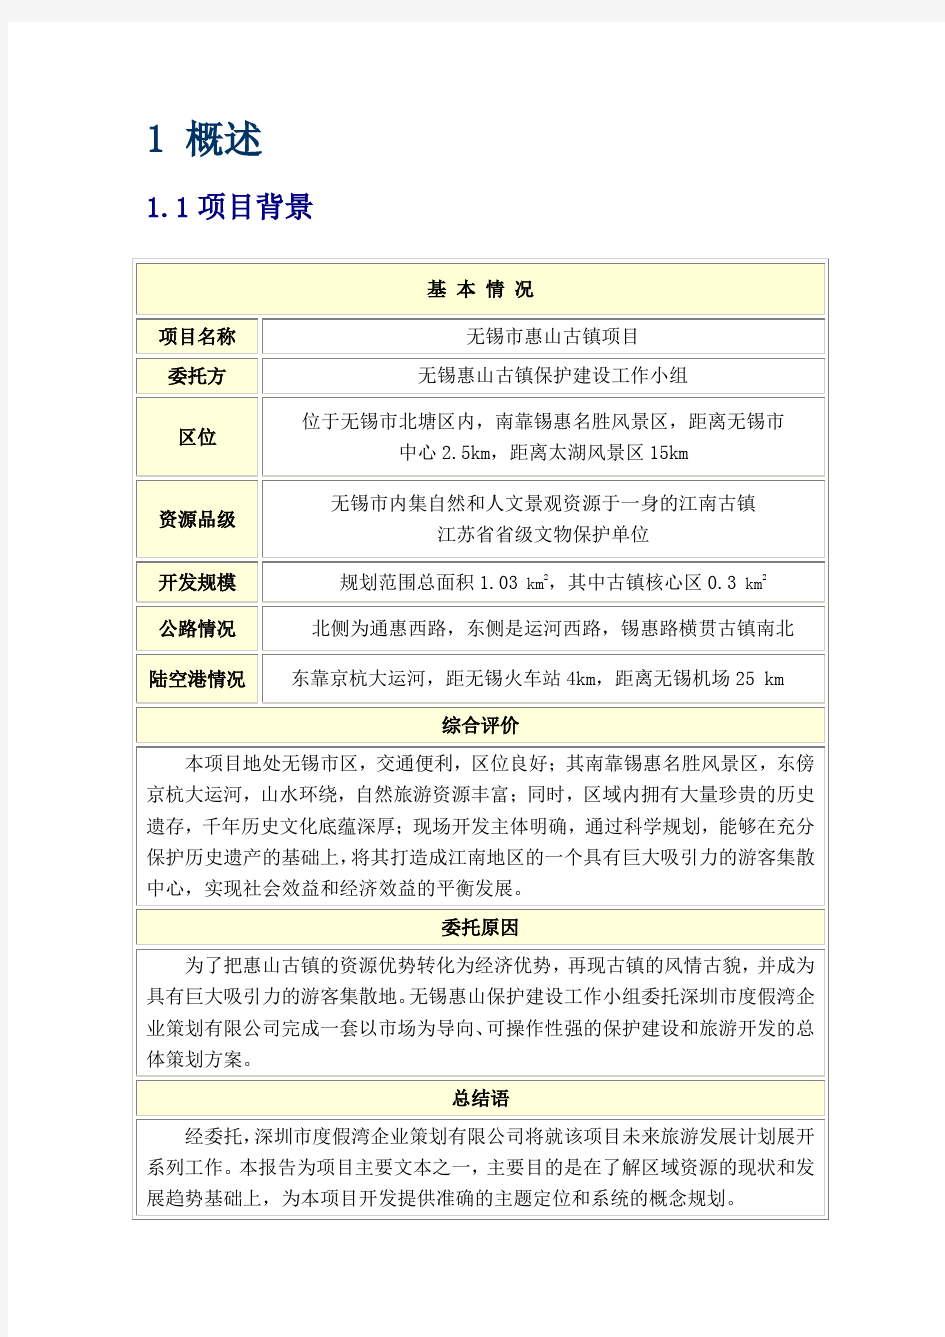 无锡惠山古镇主题定位与总体策划报告